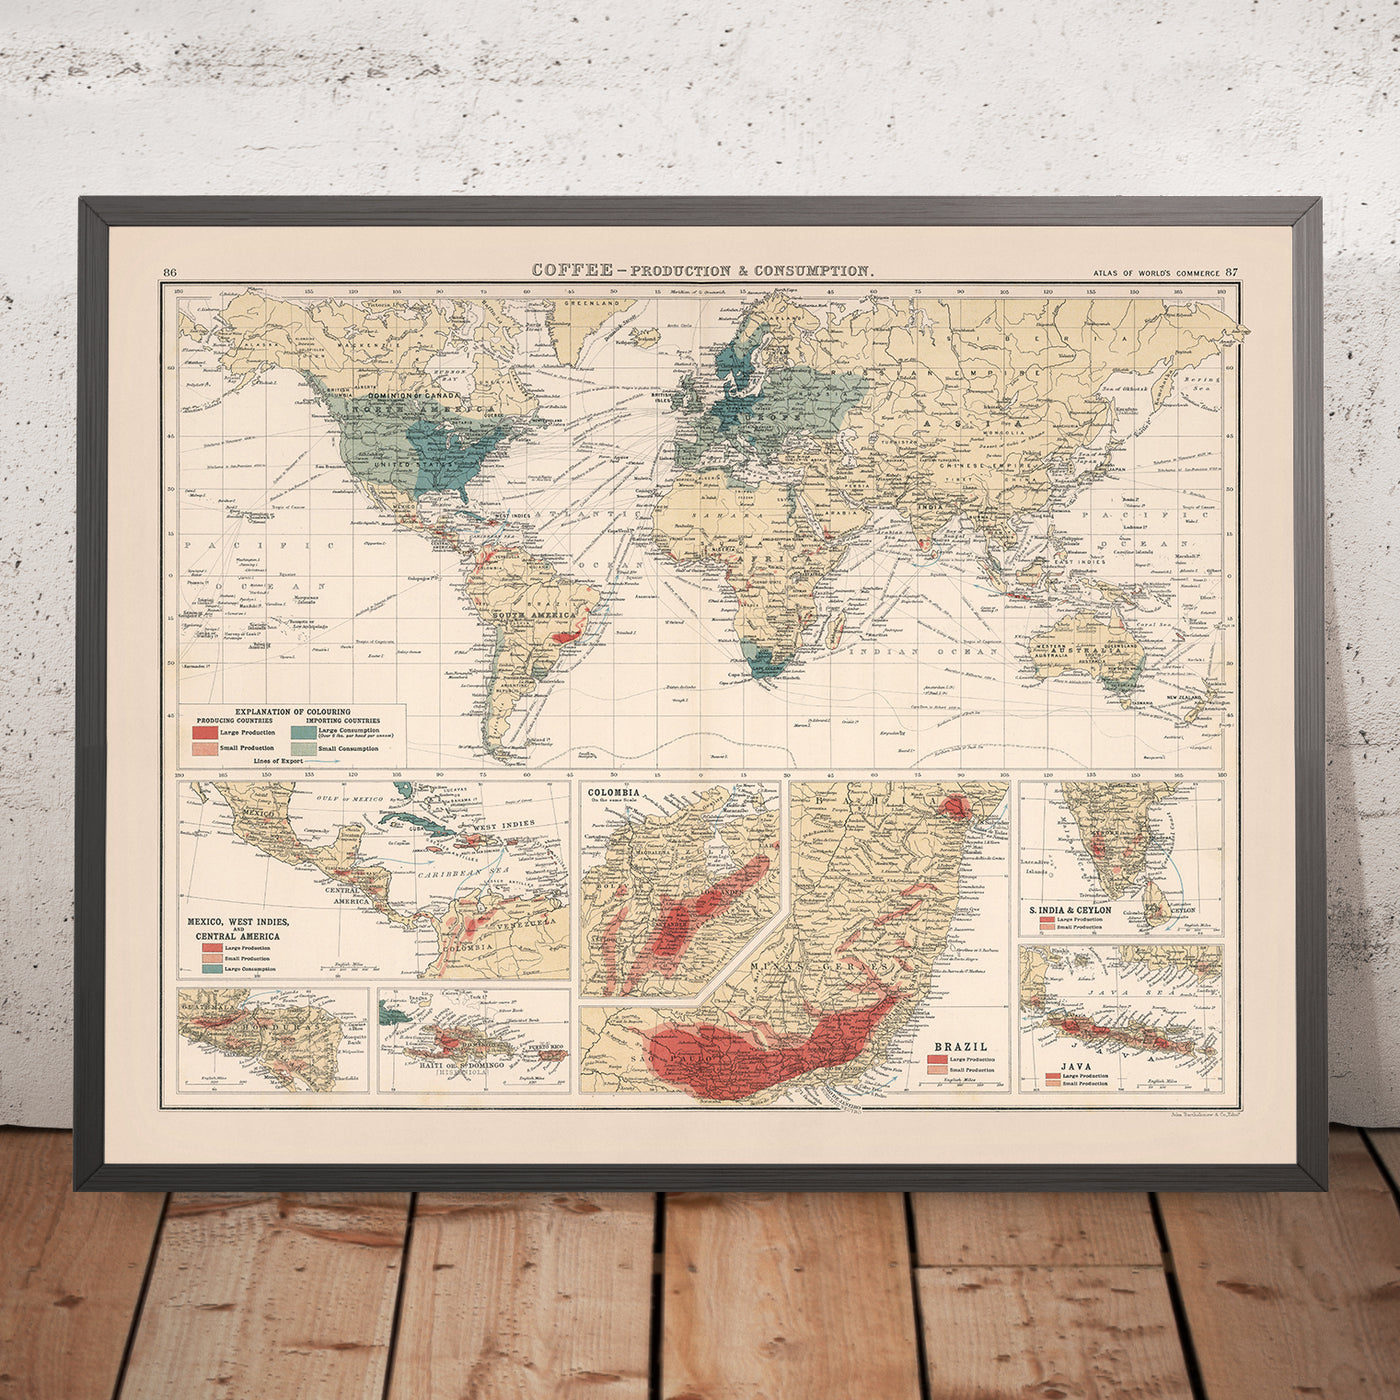 Production et consommation de café sur la carte de l'Ancien Monde par Bartholomew, 1907 : projection Mercator, routes commerciales mondiales, annotations historiques.